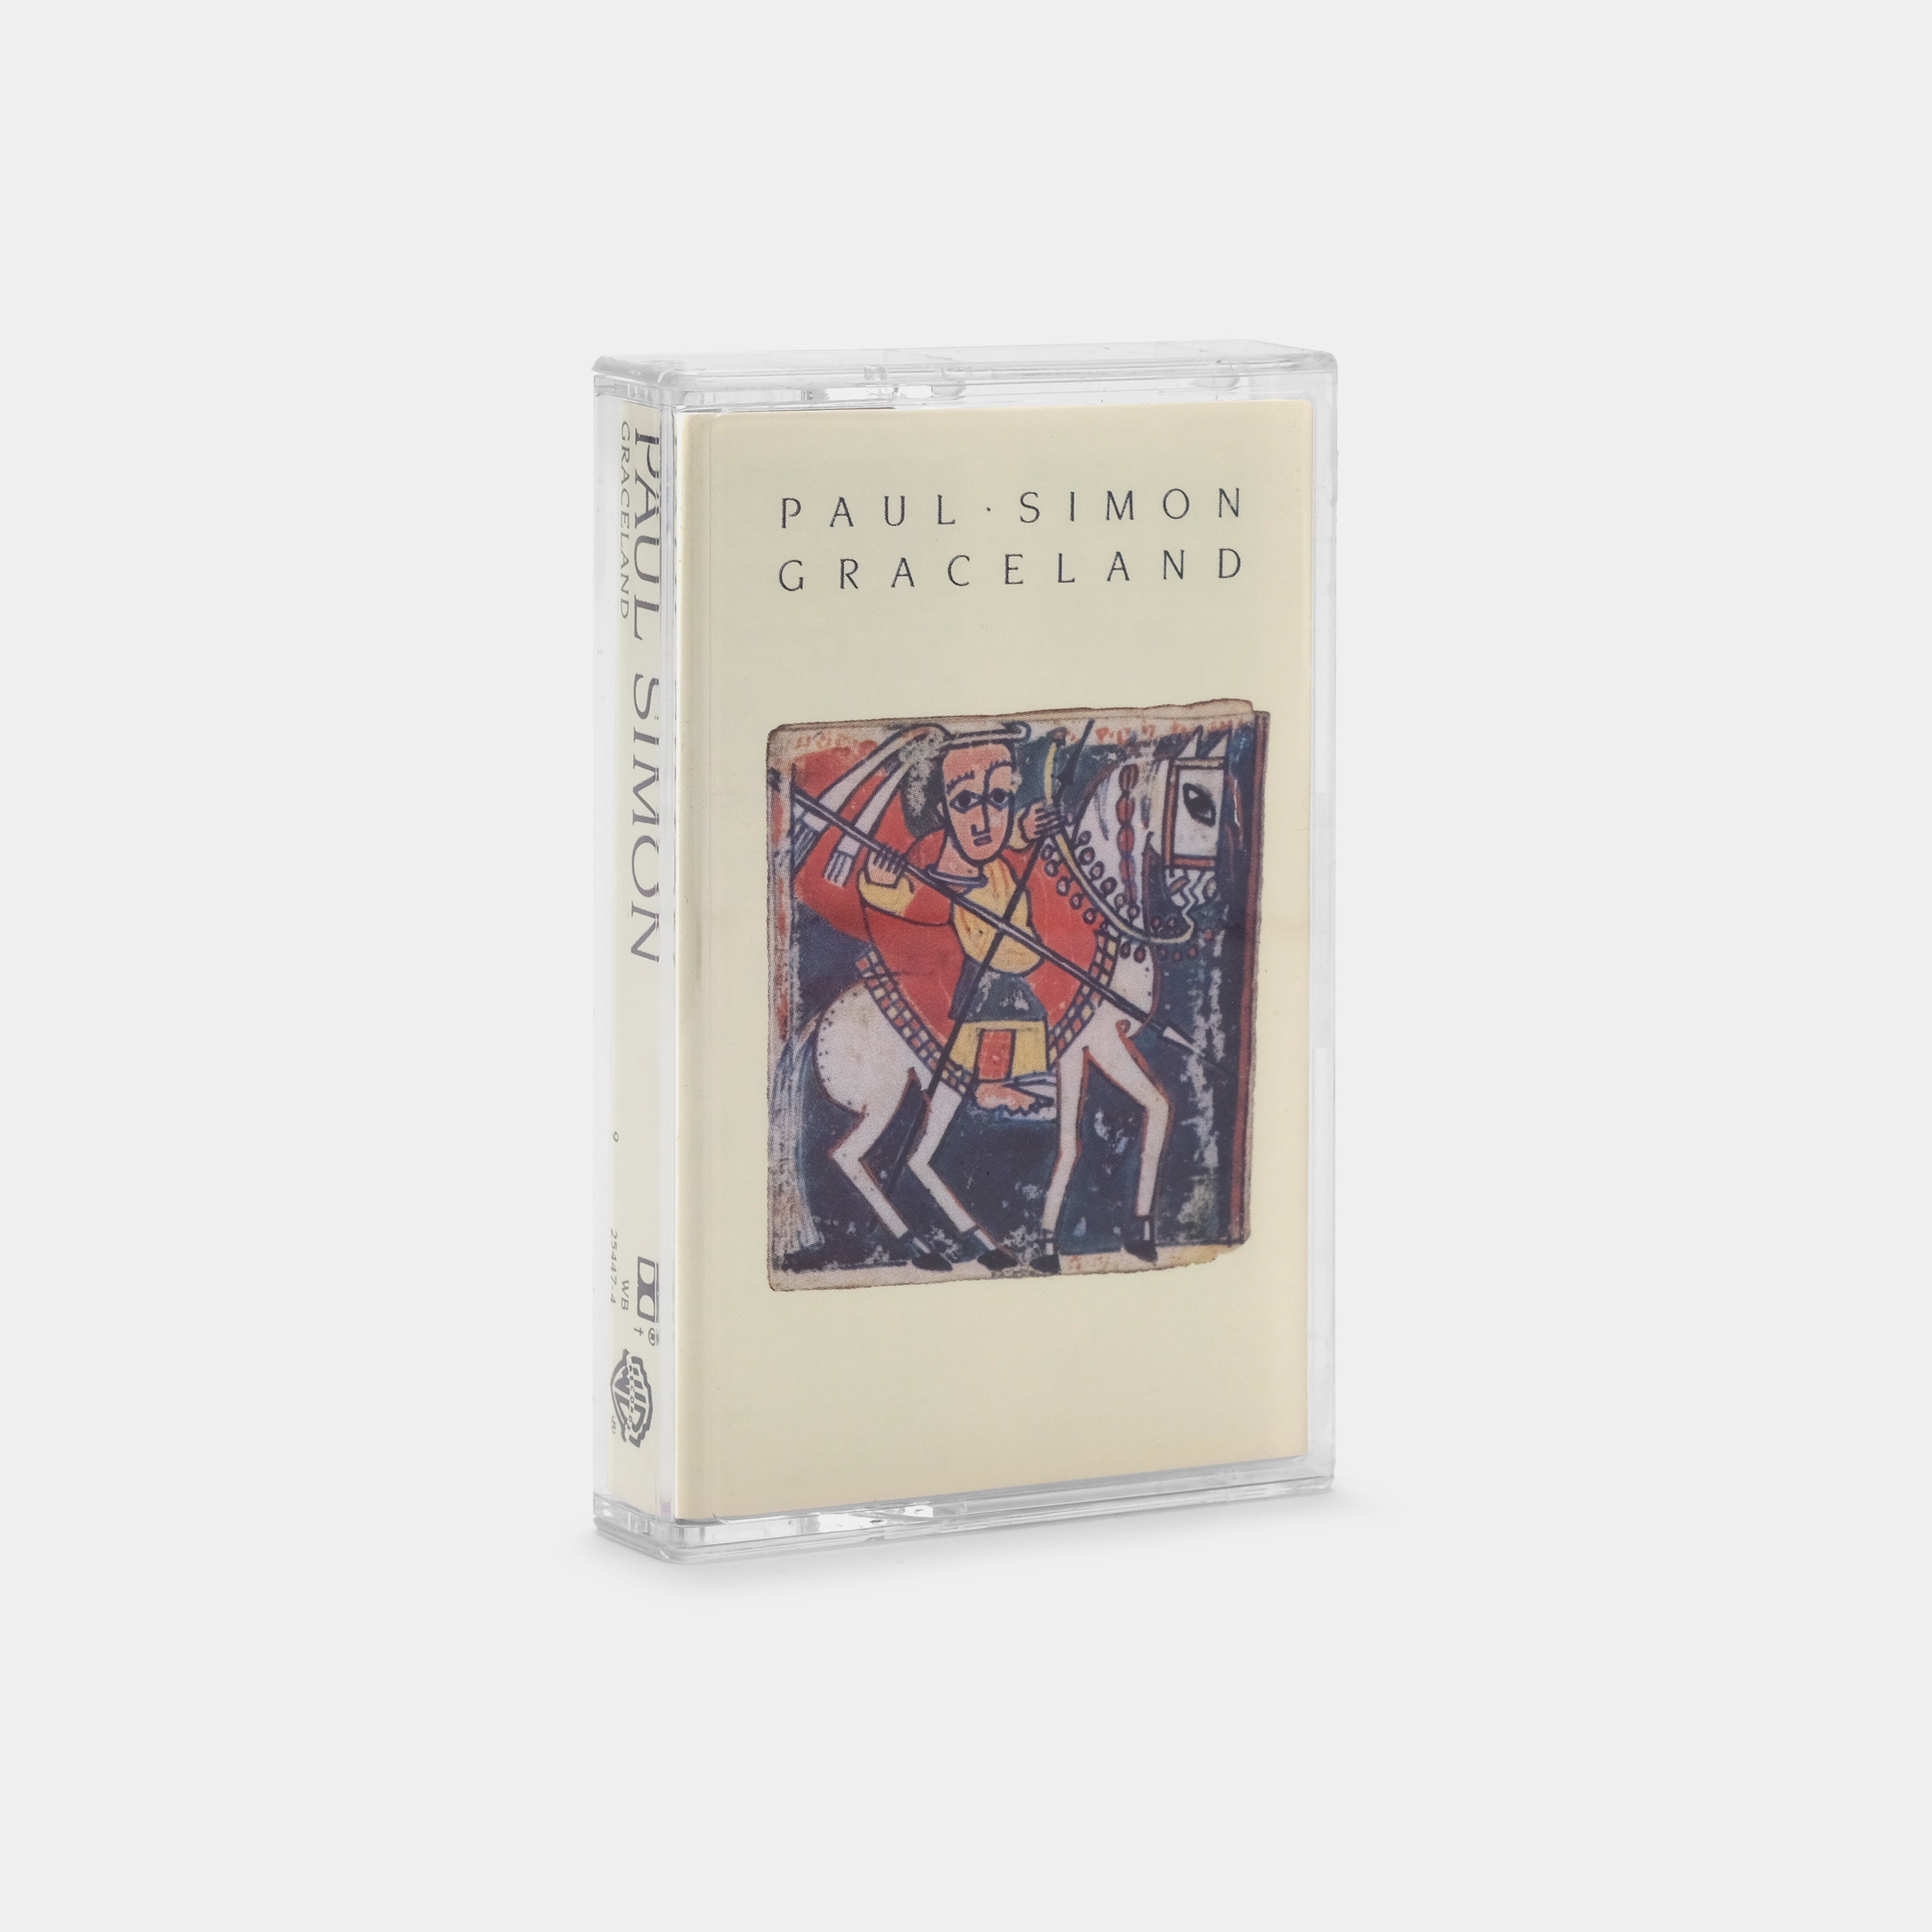 Paul Simon - Graceland Cassette Tape